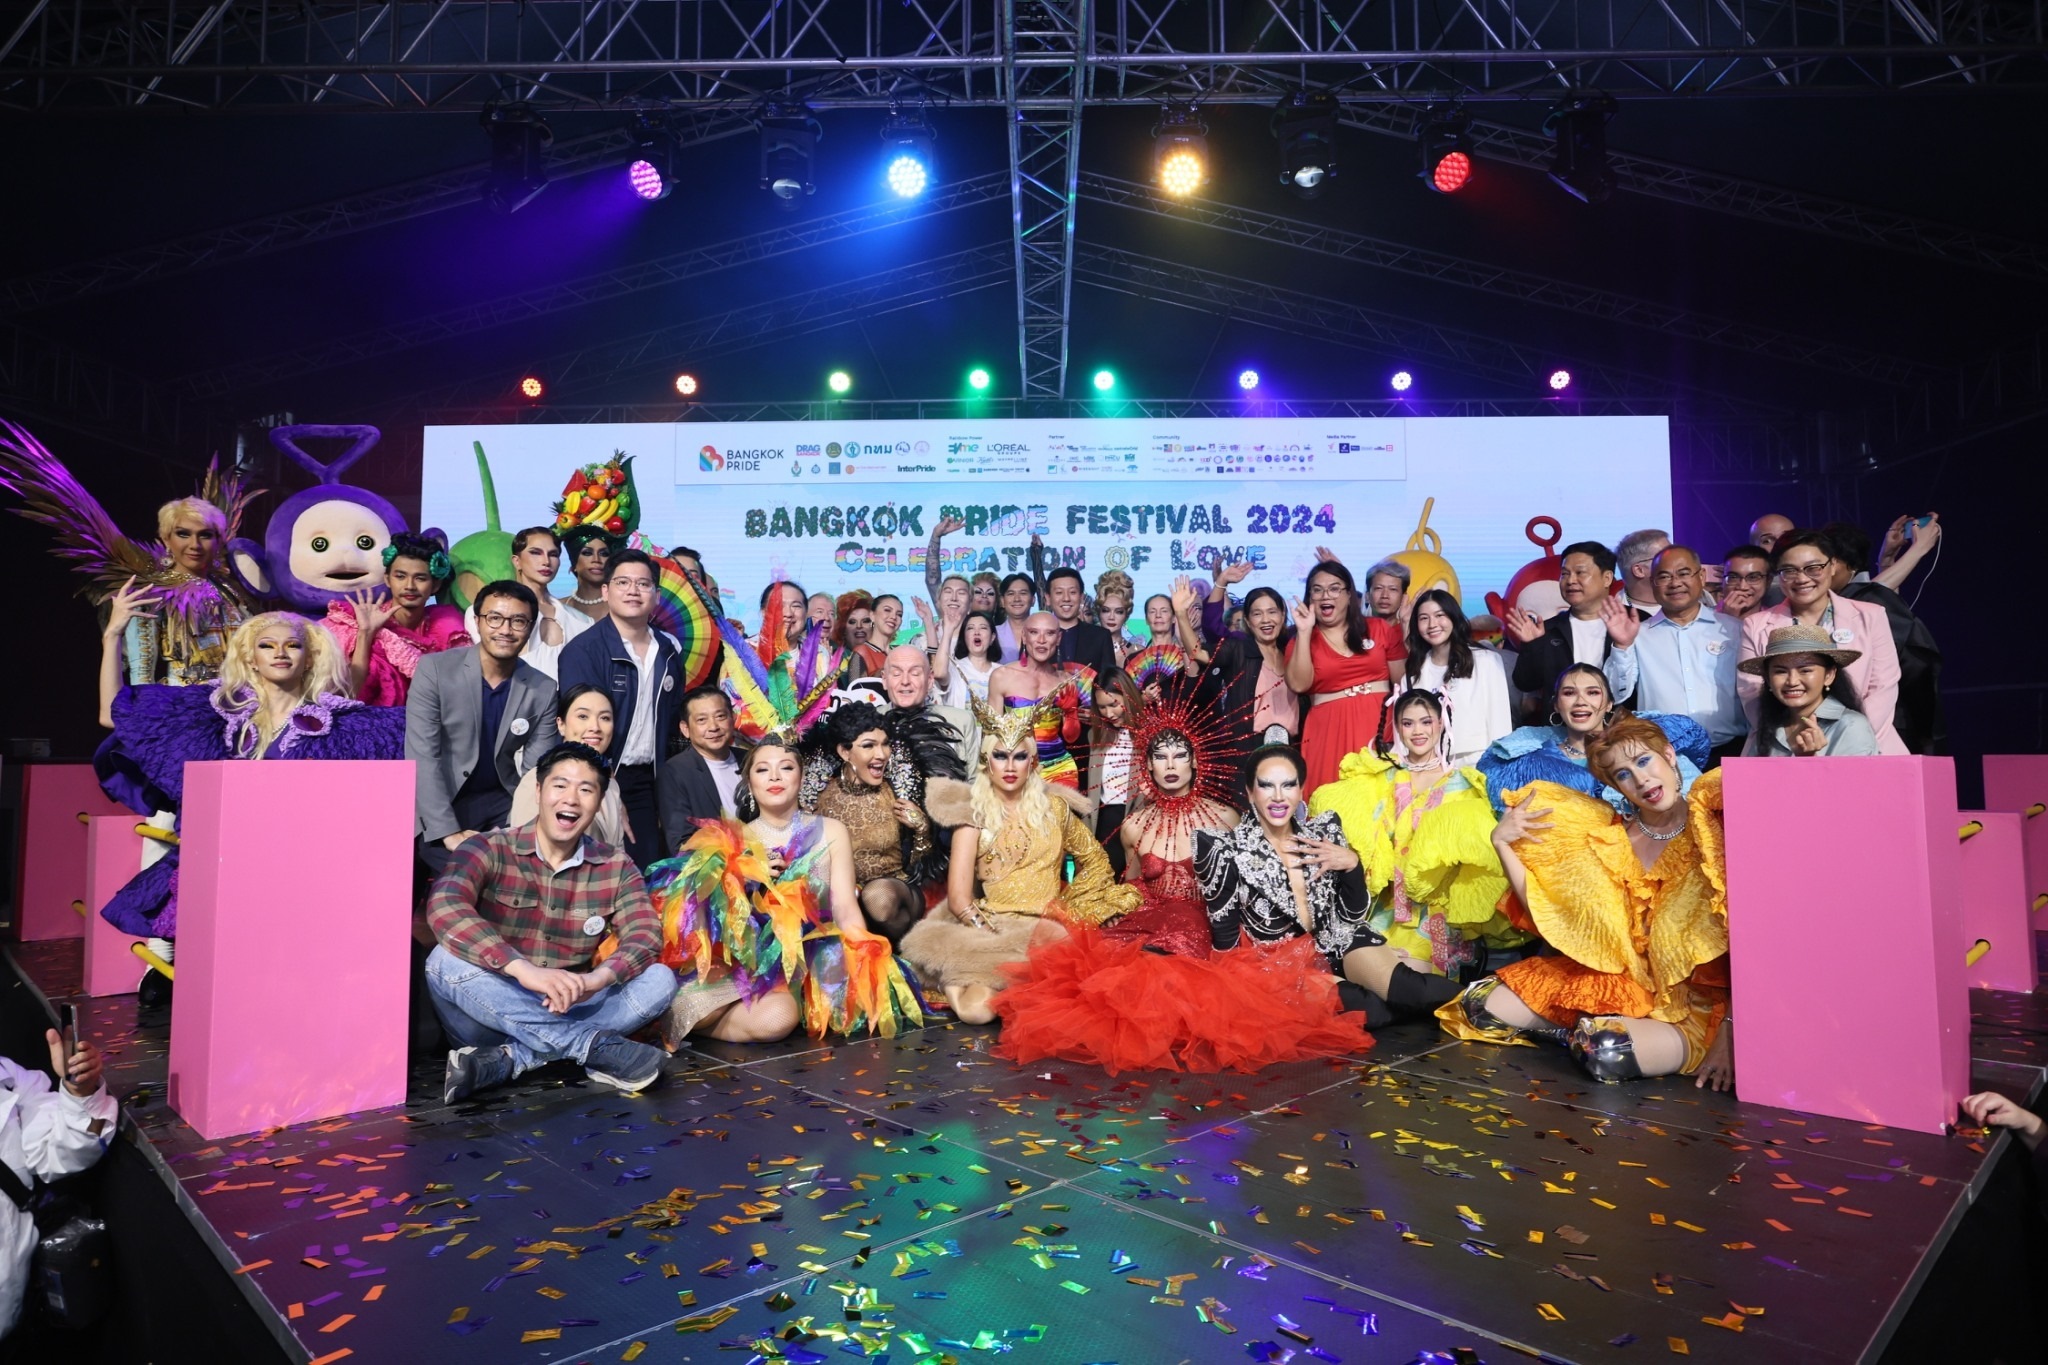 พร้อมเปิดเทศกาล “Bangkok Pride Festival 2024” กระหึ่ม!  เฟสติวัลที่ยิ่งใหญ่ที่สุดในเอเชียตะวันออกเฉียงใต้   รวมพลัง LGBTQIAN+ ร่วม Celebration of Love เฉลิมฉลองสมรสเท่าเทียม สำนักพิมพ์แม่บ้าน